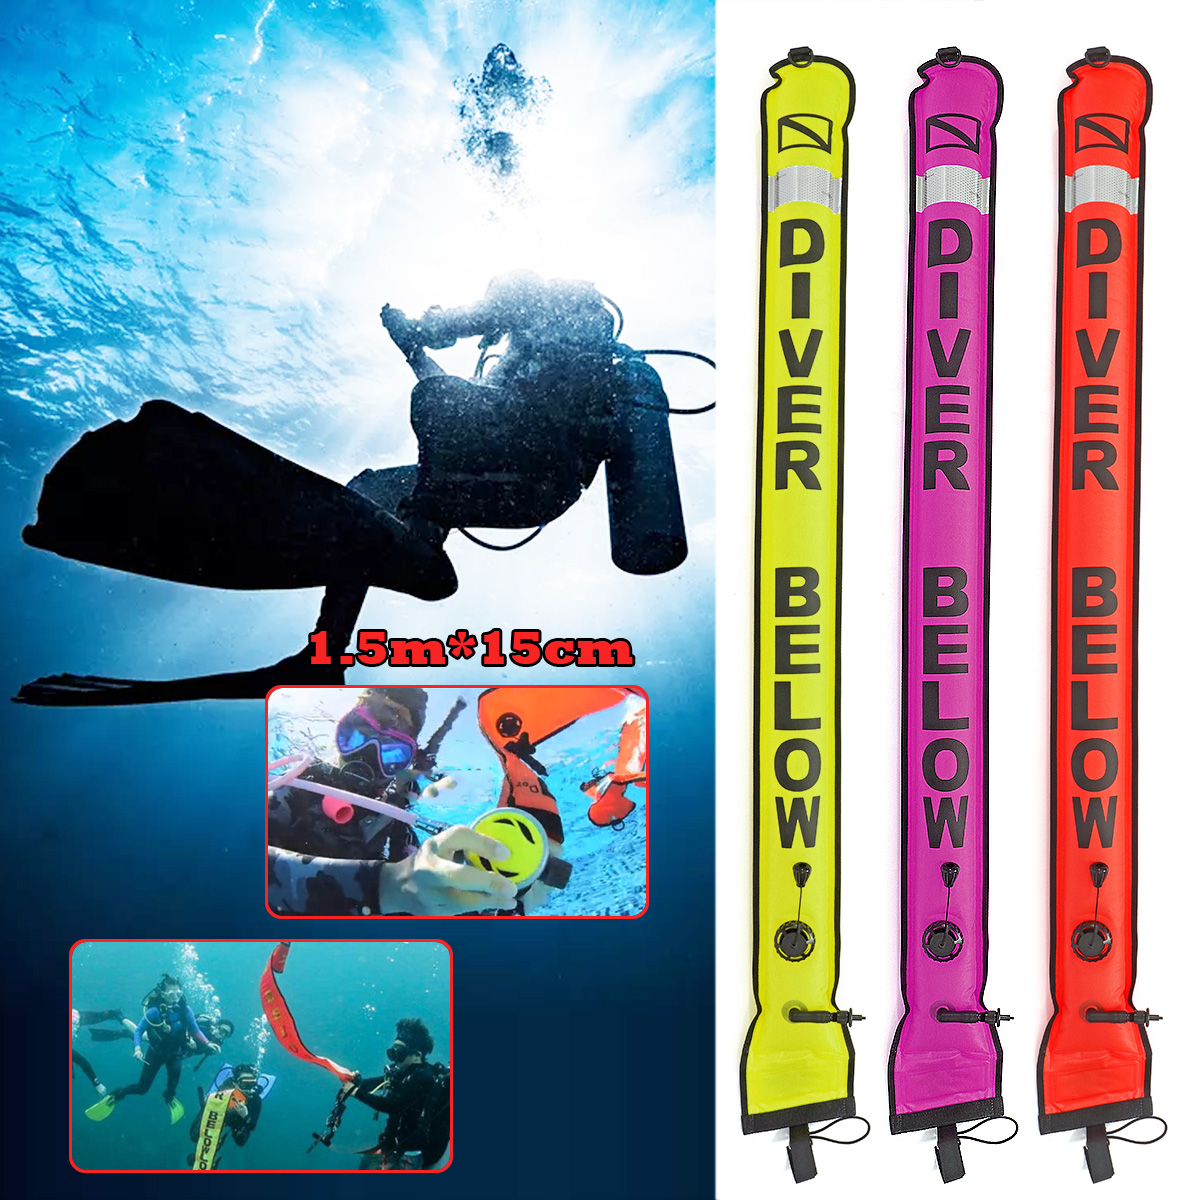 

Катушка для подводного плавания с высокой видимостью 1,5 м SMB Поверхностный маркер и защитное снаряжение для катушки для погружения